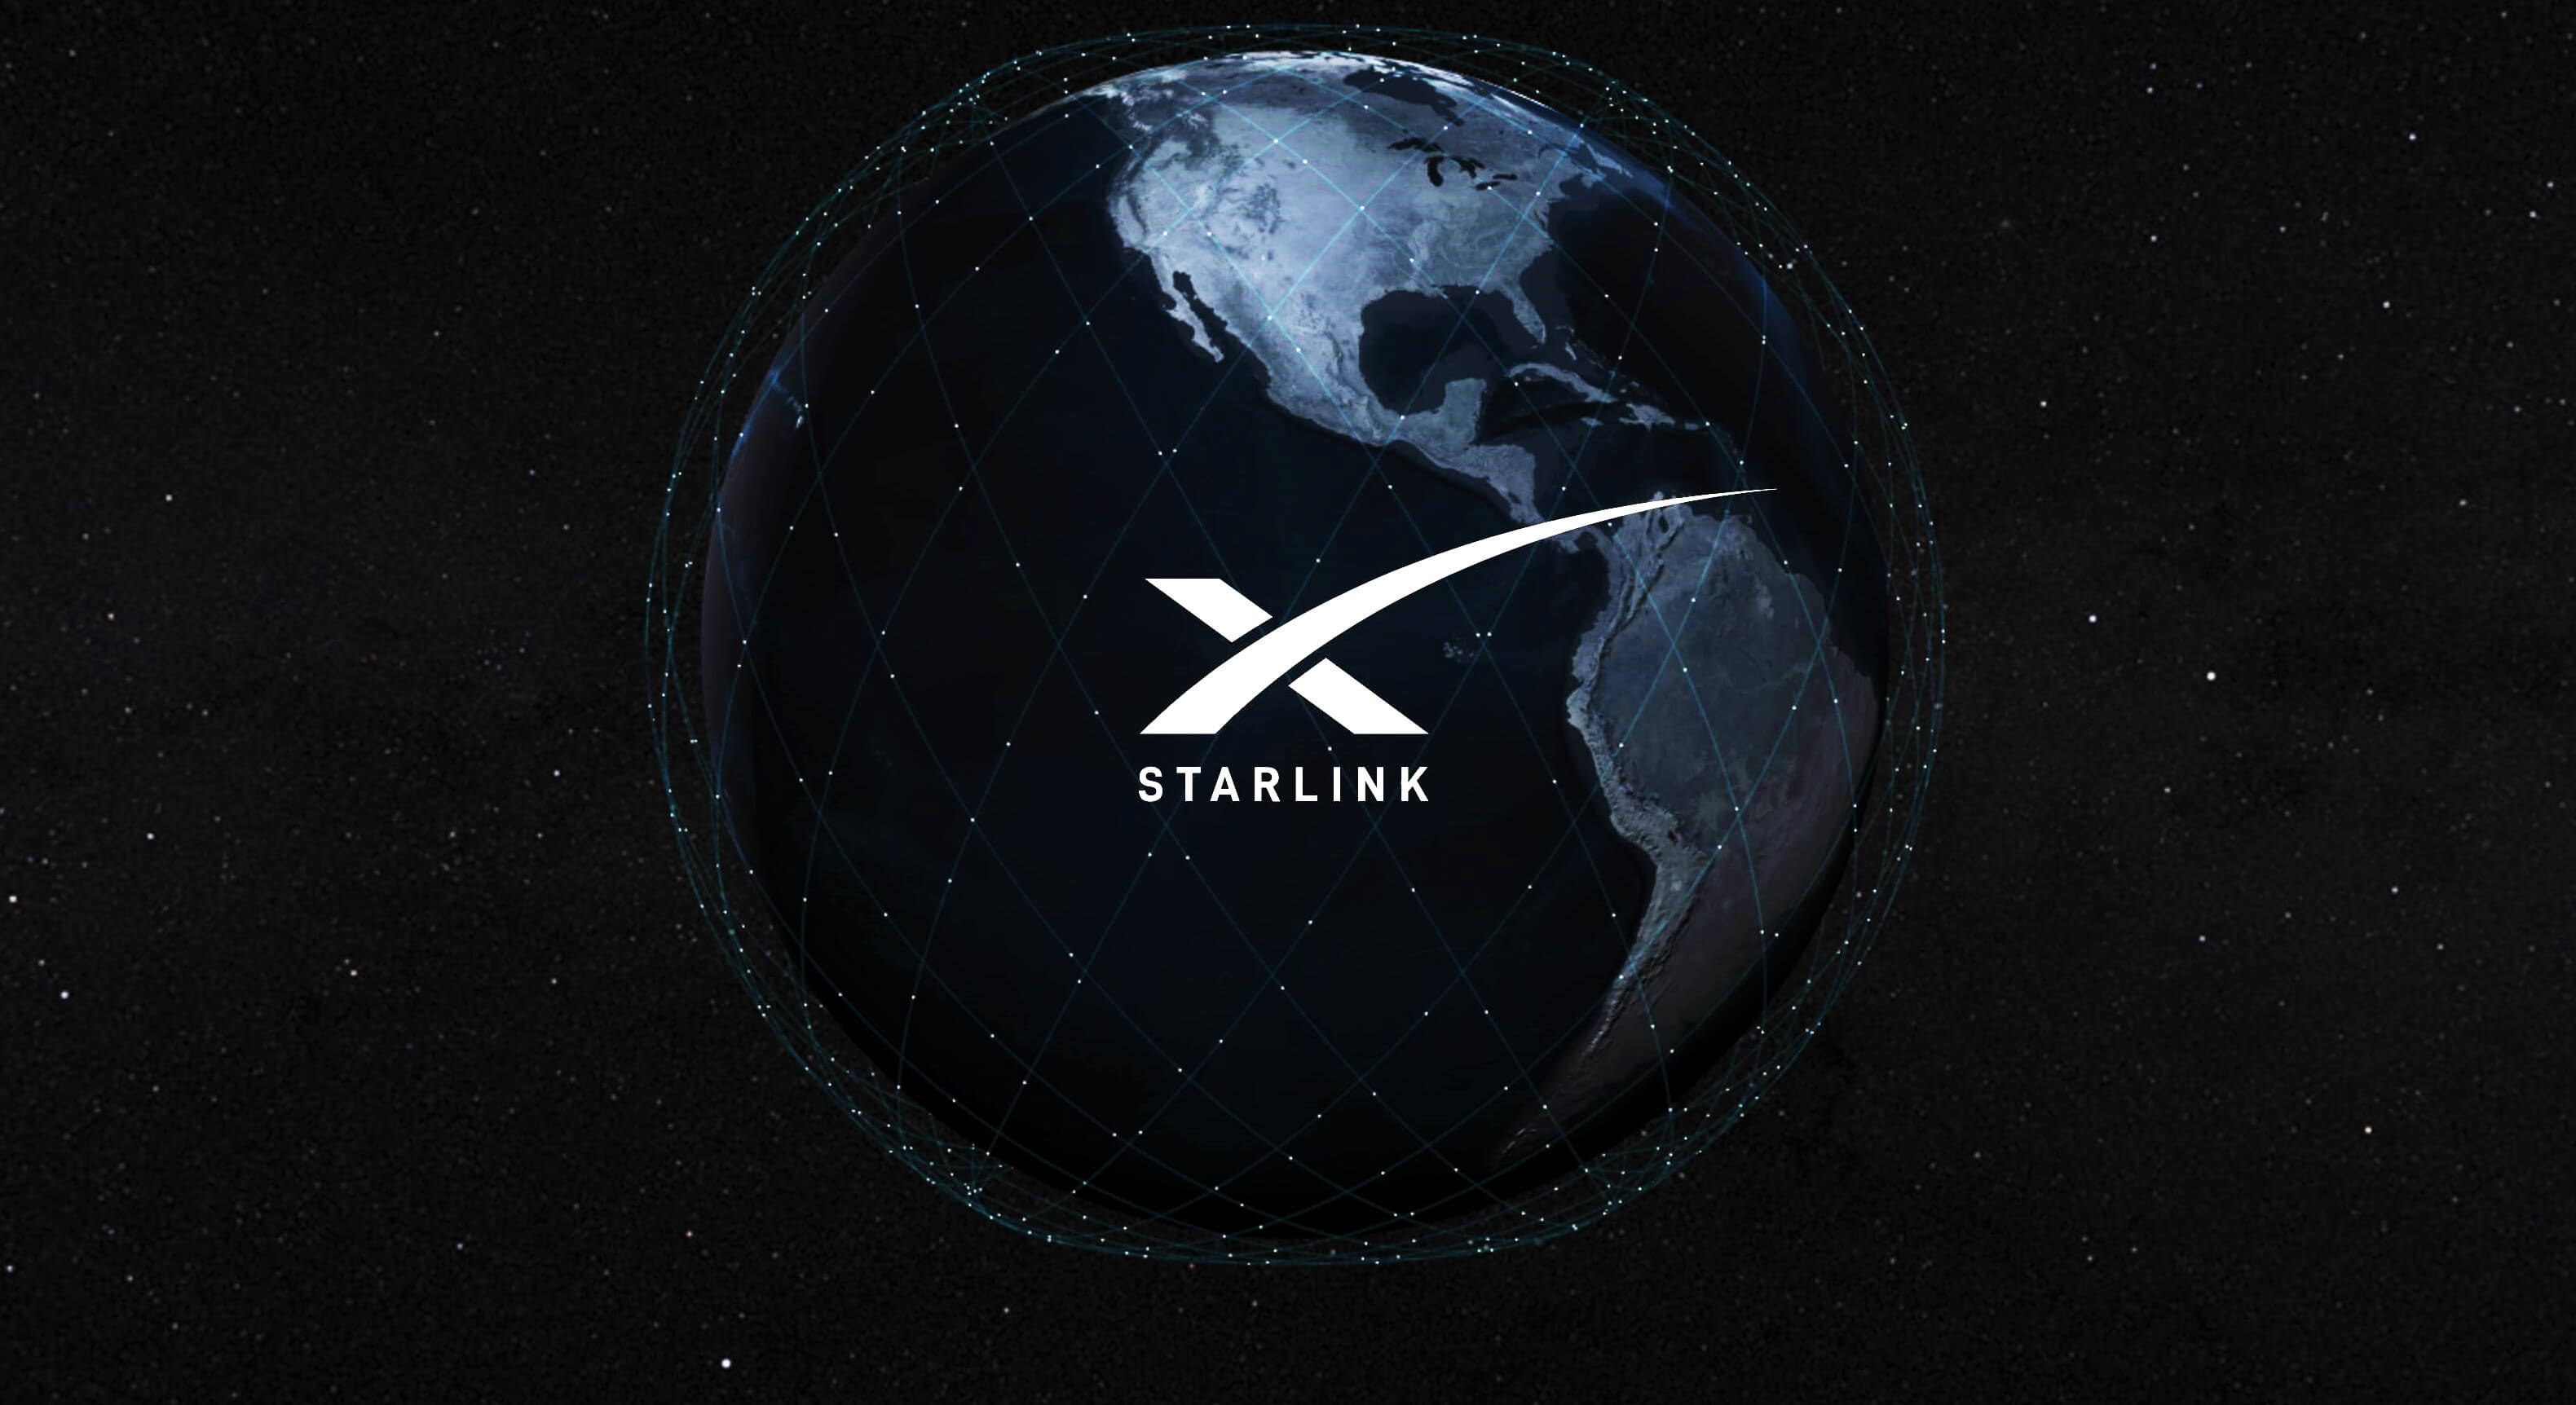 स्पेसएक्स सीओओ का कहना है कि स्टारलिंक के पास 2022 में कैश-फ्लो-पॉजिटिव क्वार्टर था